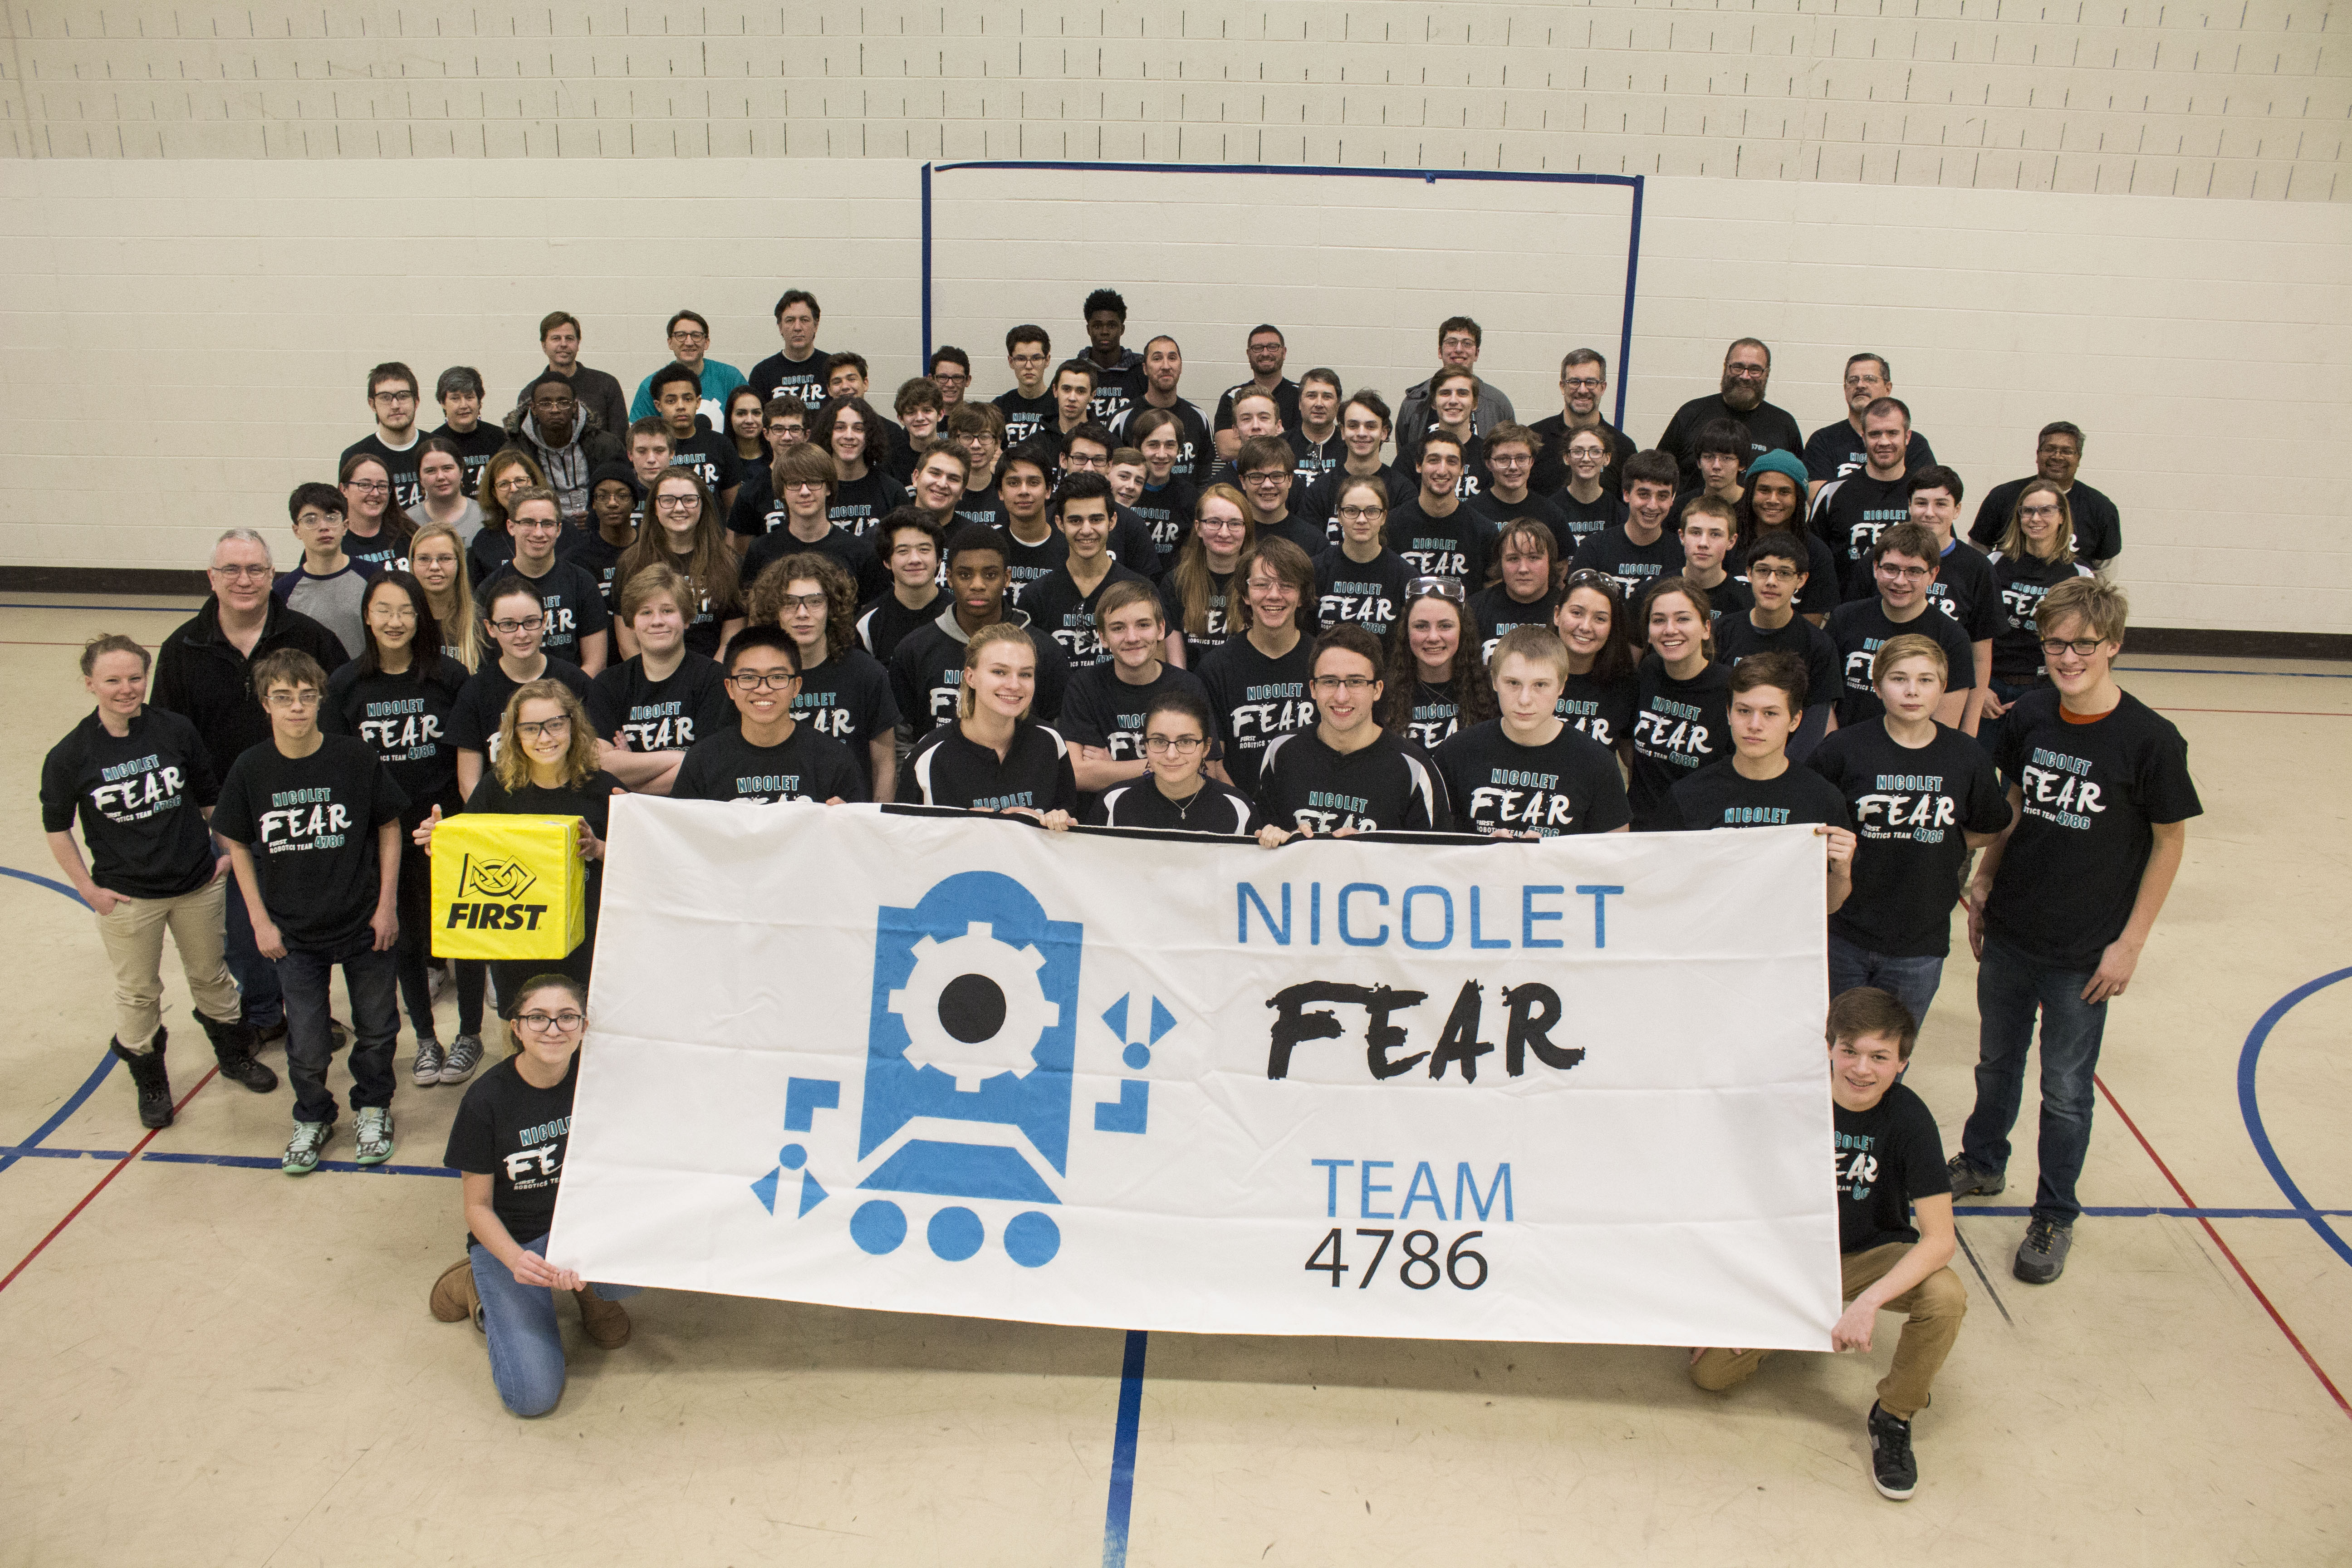 The 2018 FEAR team.